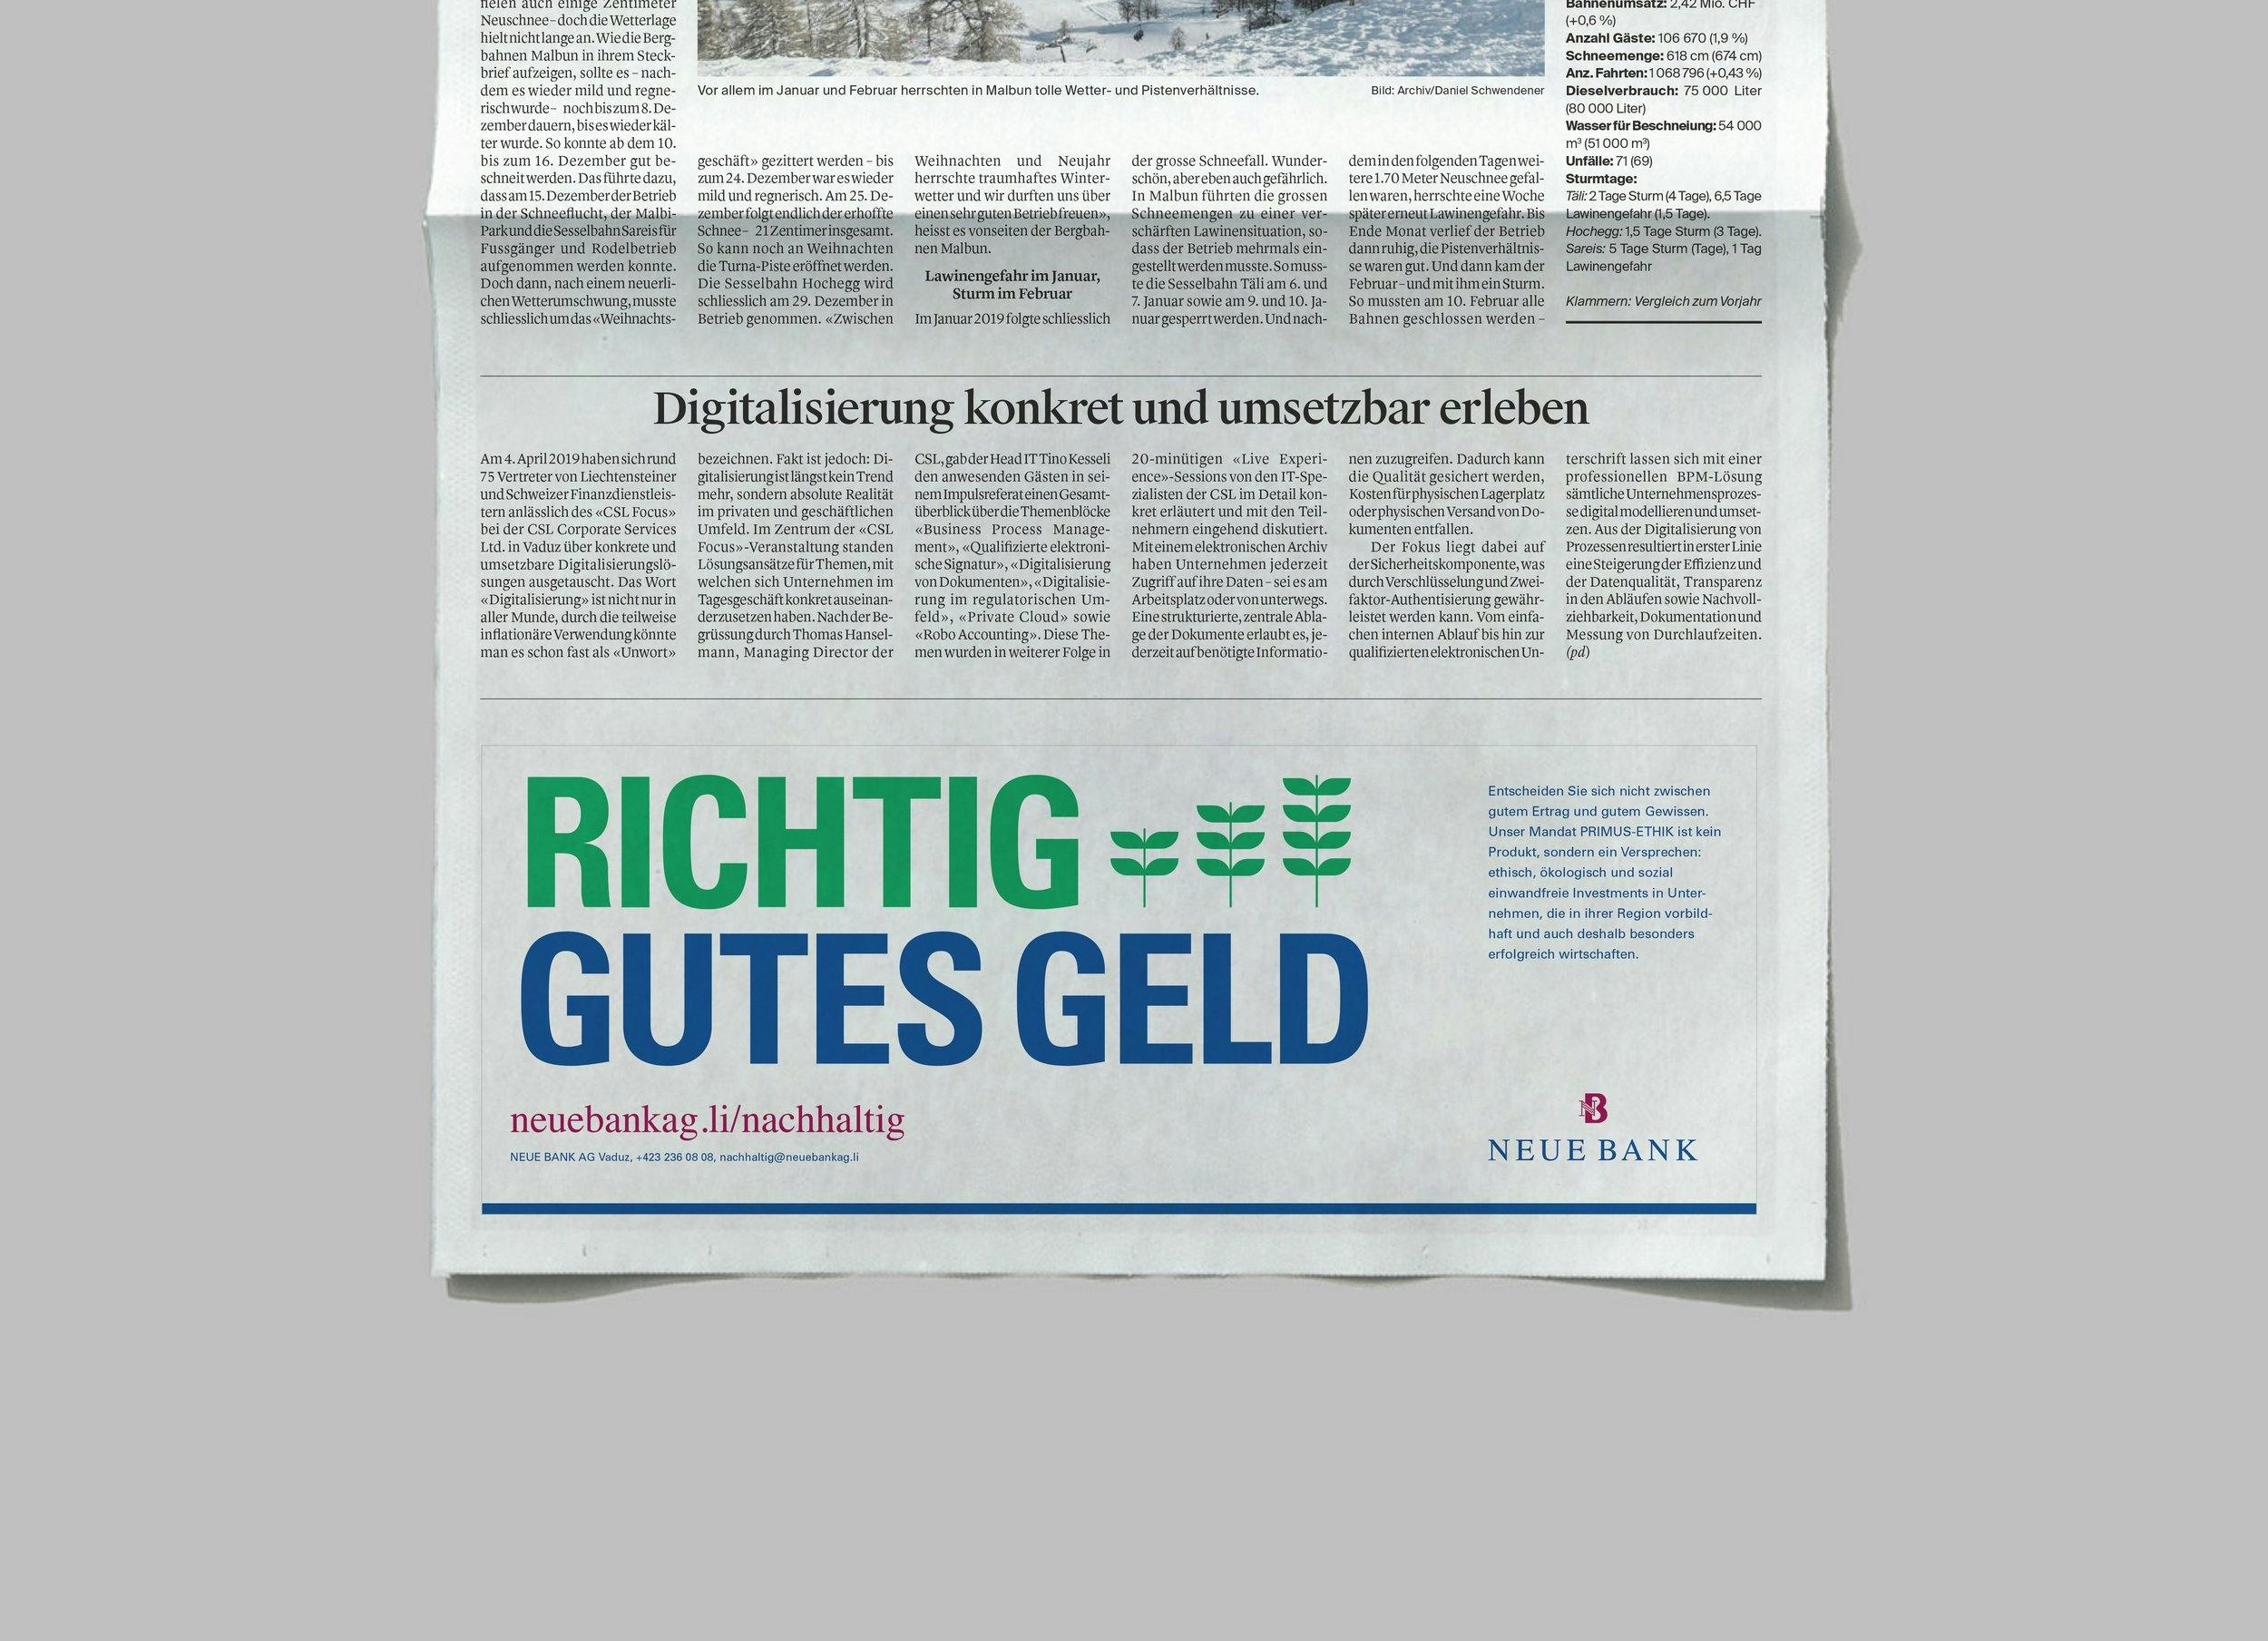 Neue-Bank-Kampagne-Richtig-Gutes-Geld_Zeitung-Inserat © Patricia Keckeis